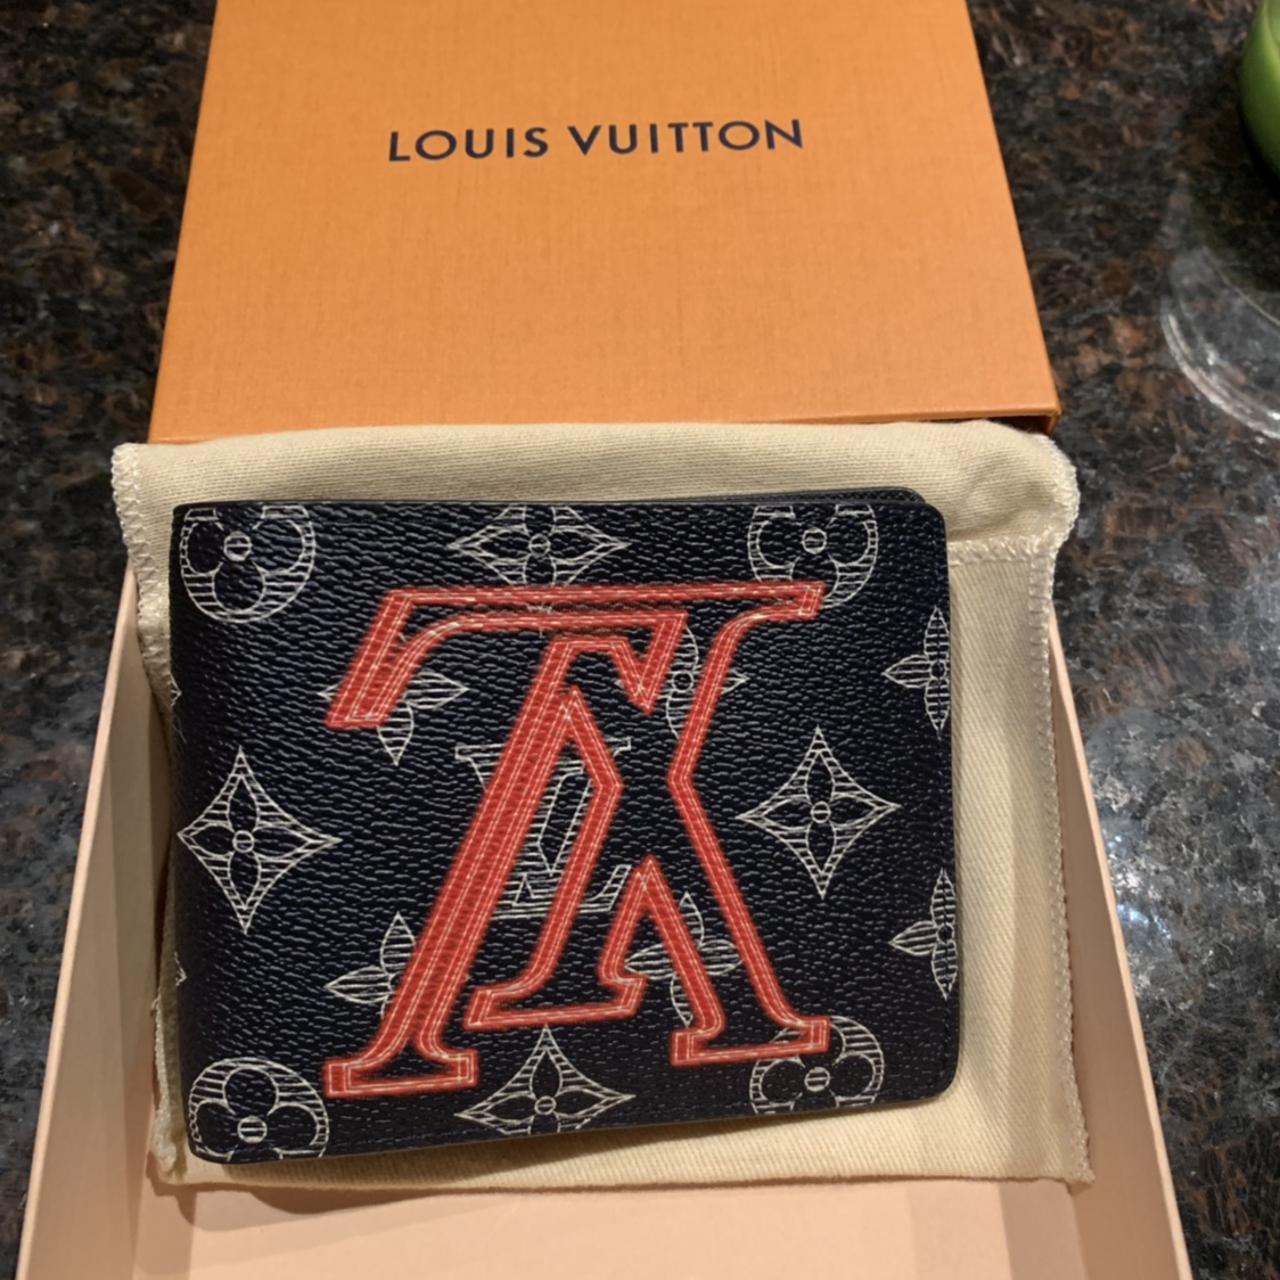 BNIB  Louis Vuitton Upside Down Wallet, Luxury, Bags & Wallets on